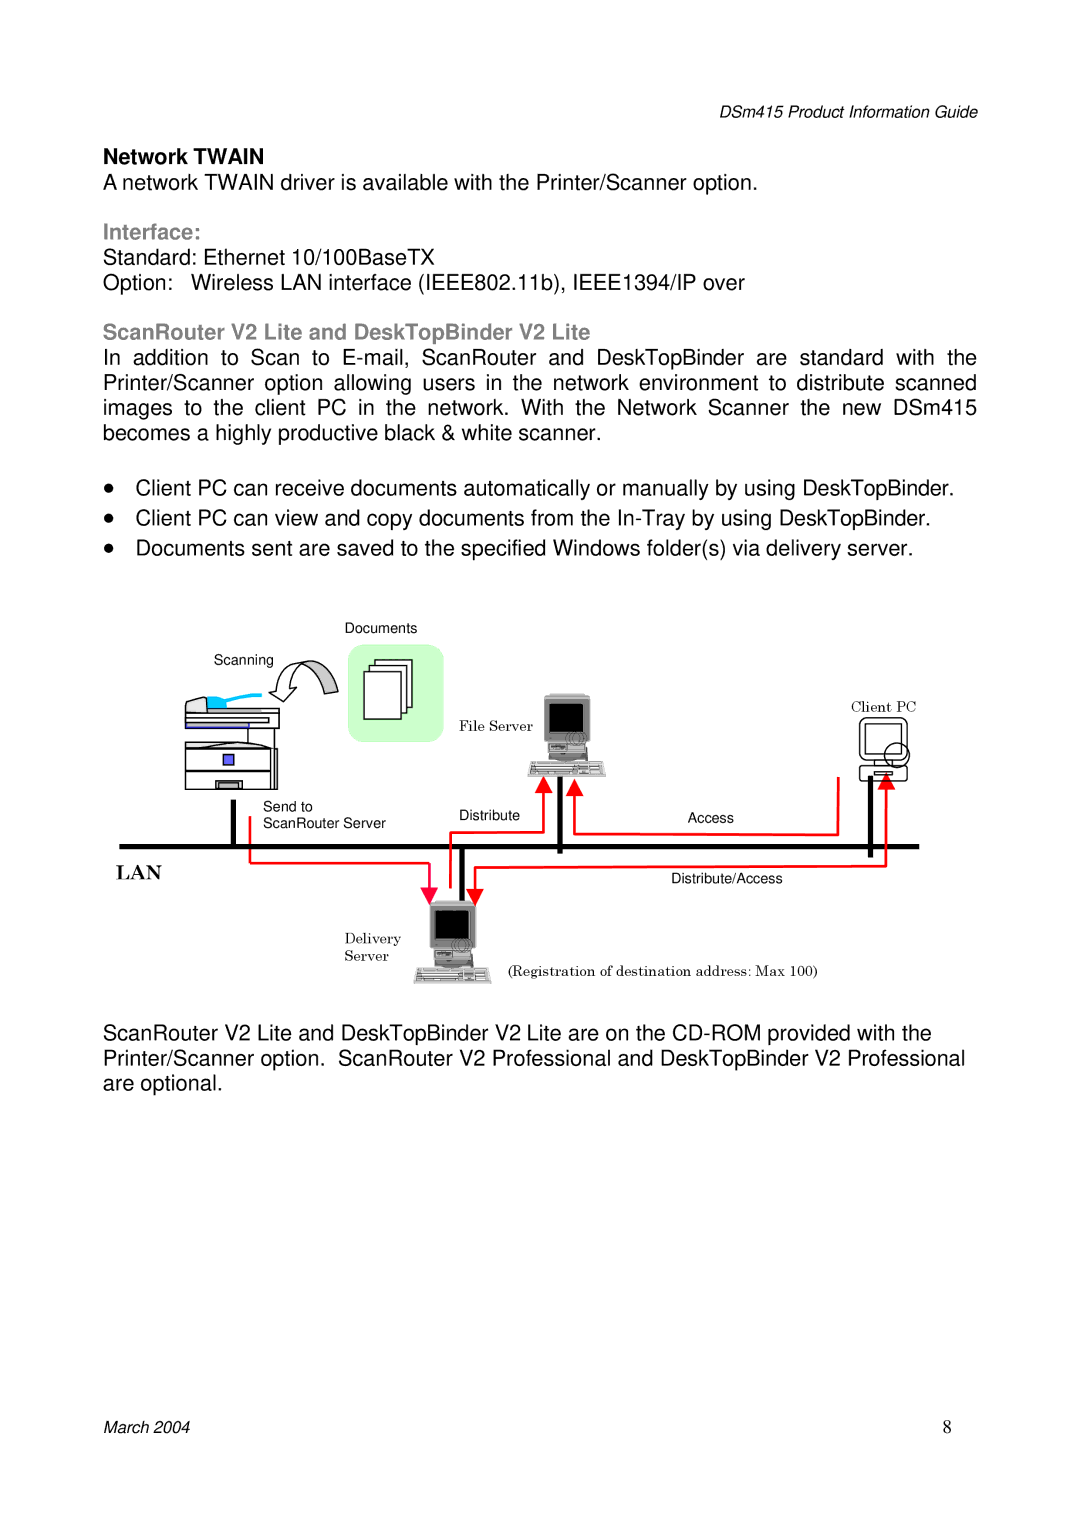 3Com DSm415 manual Network Twain, Interface, ScanRouter V2 Lite and DeskTopBinder V2 Lite 